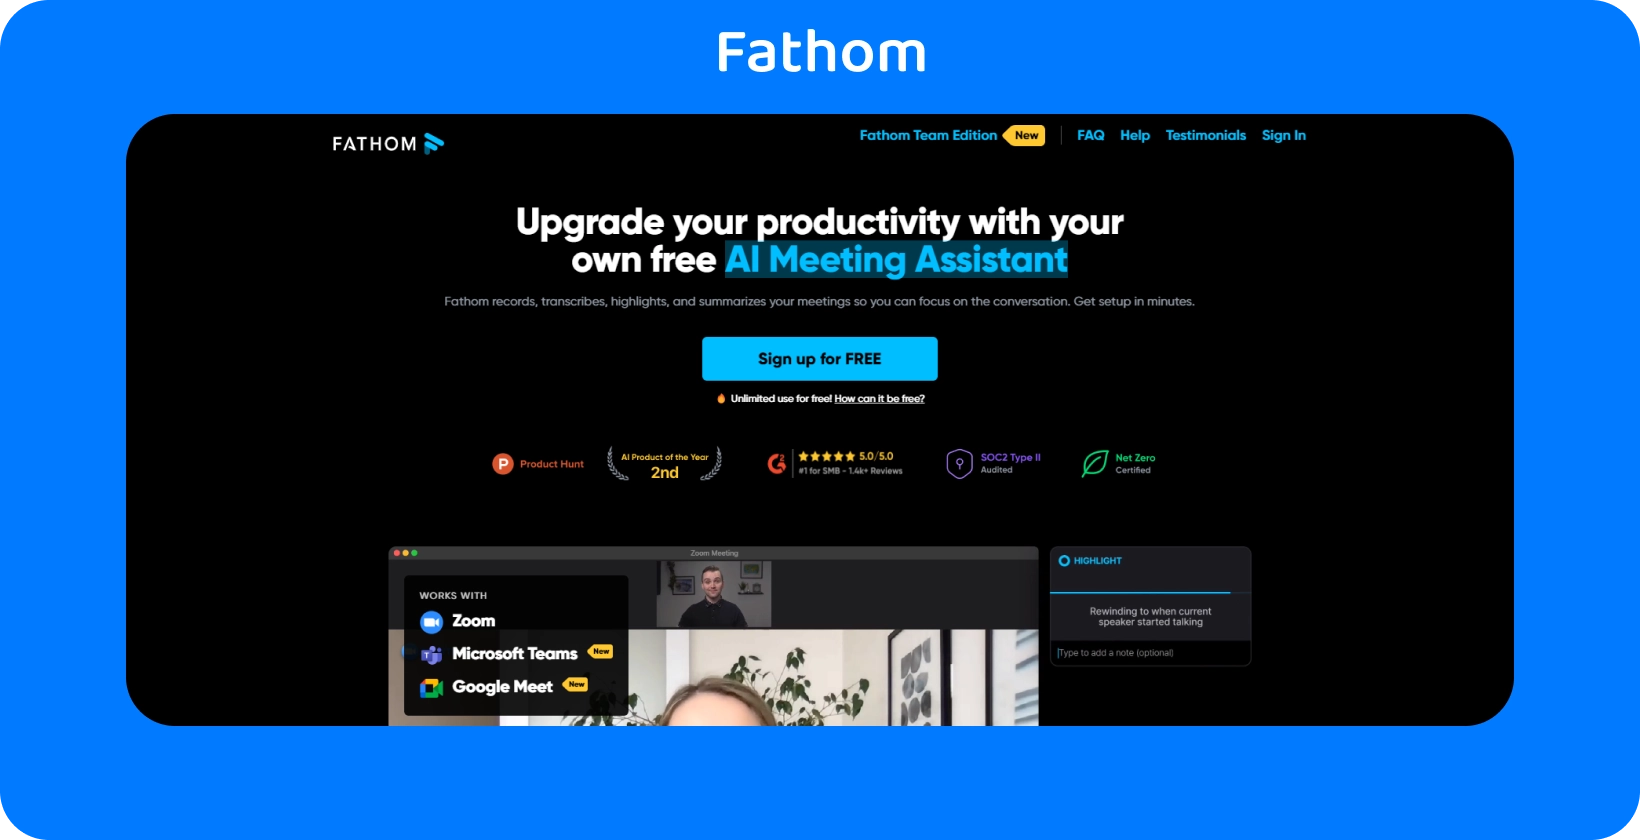 Fathom nettside viser AI Meeting Assistant for økt produktivitet gjennom opptaks- og transkriberingstjenester.